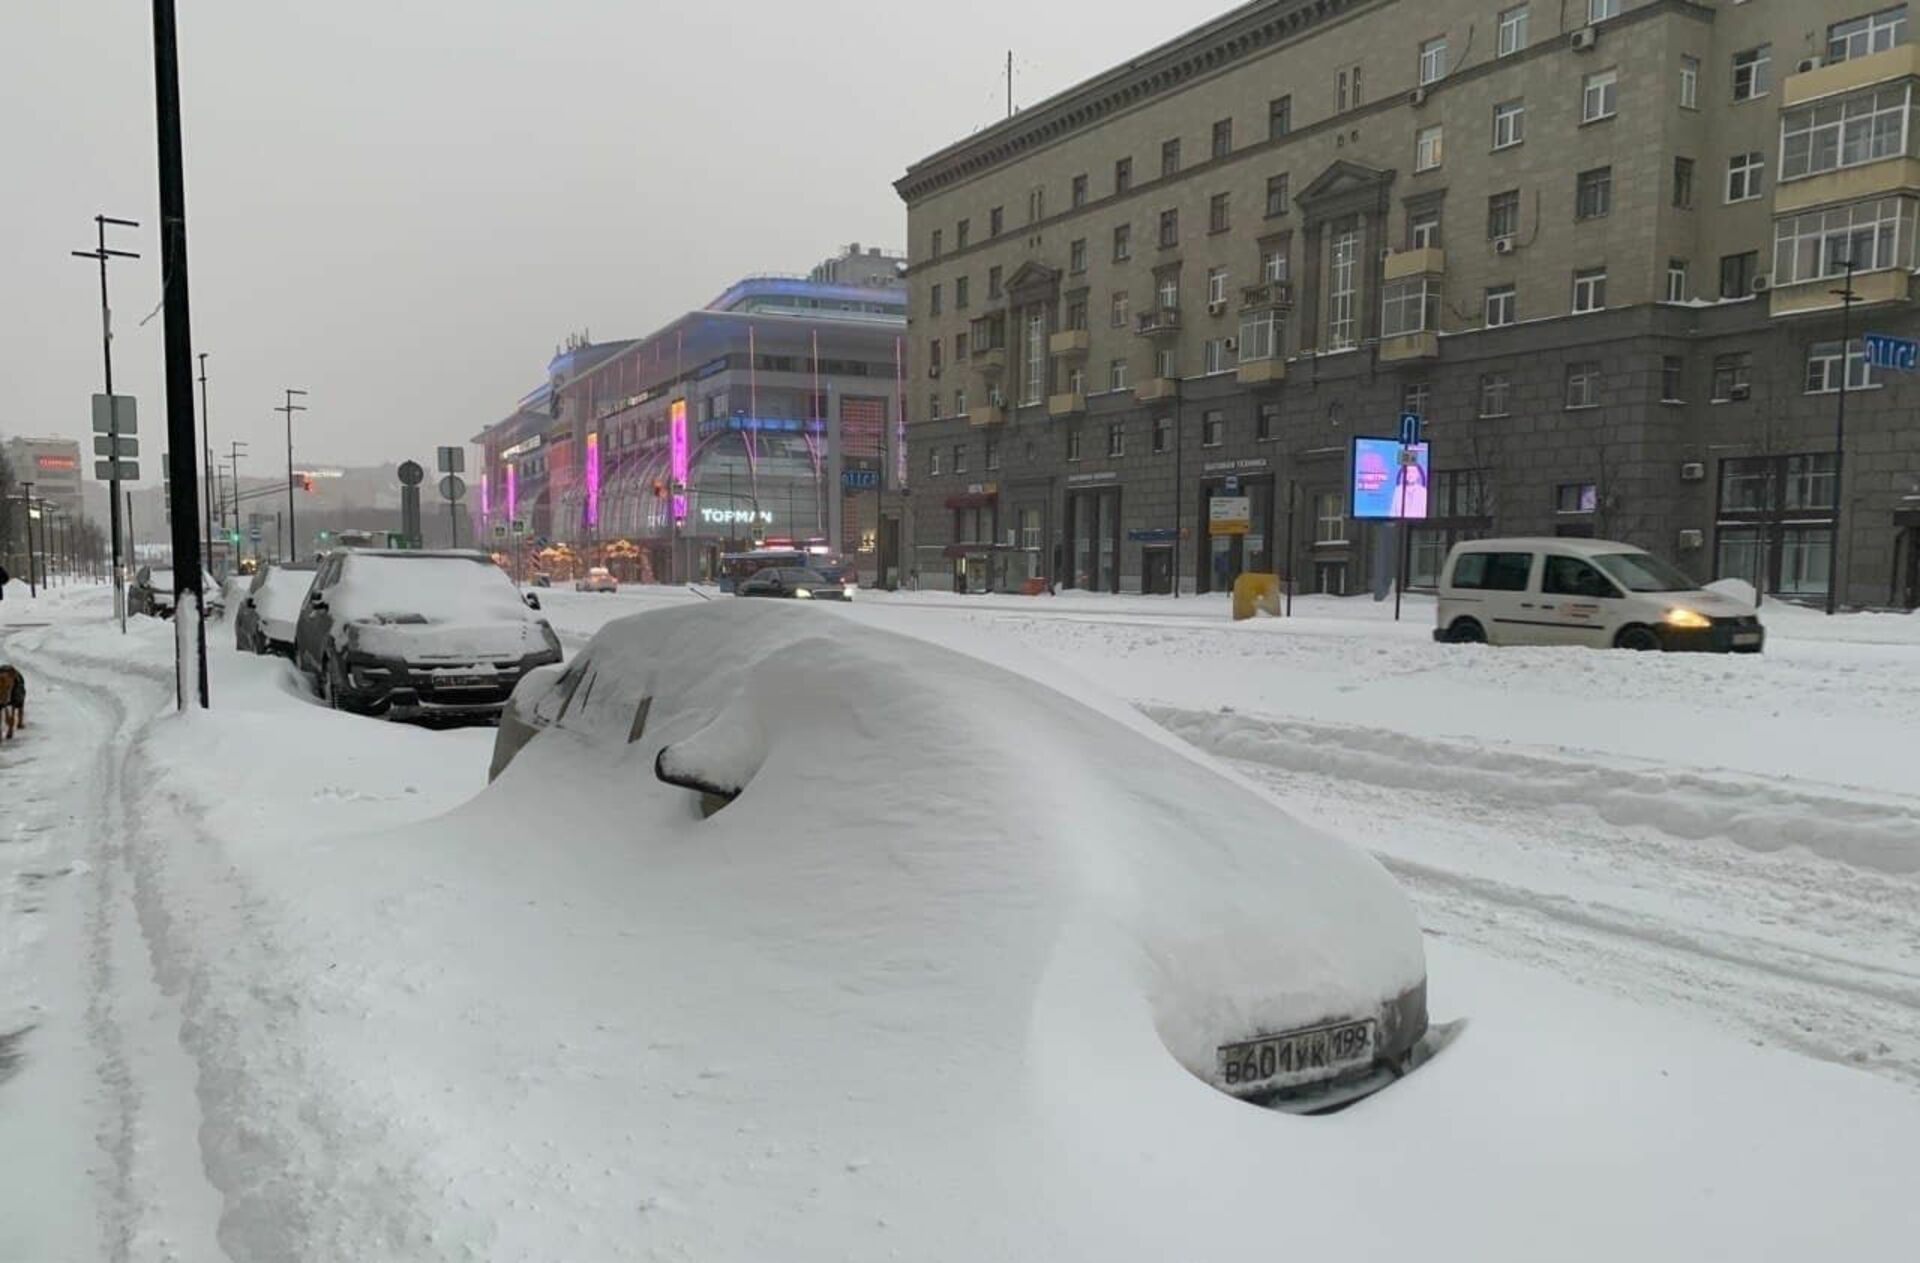 Сугробов сегодня. Снегопад в Москве 13 февраля 2021. Москва снегопад 2021. Сугробы в Москве 2021. Снегопад в Москве в феврале 2021.